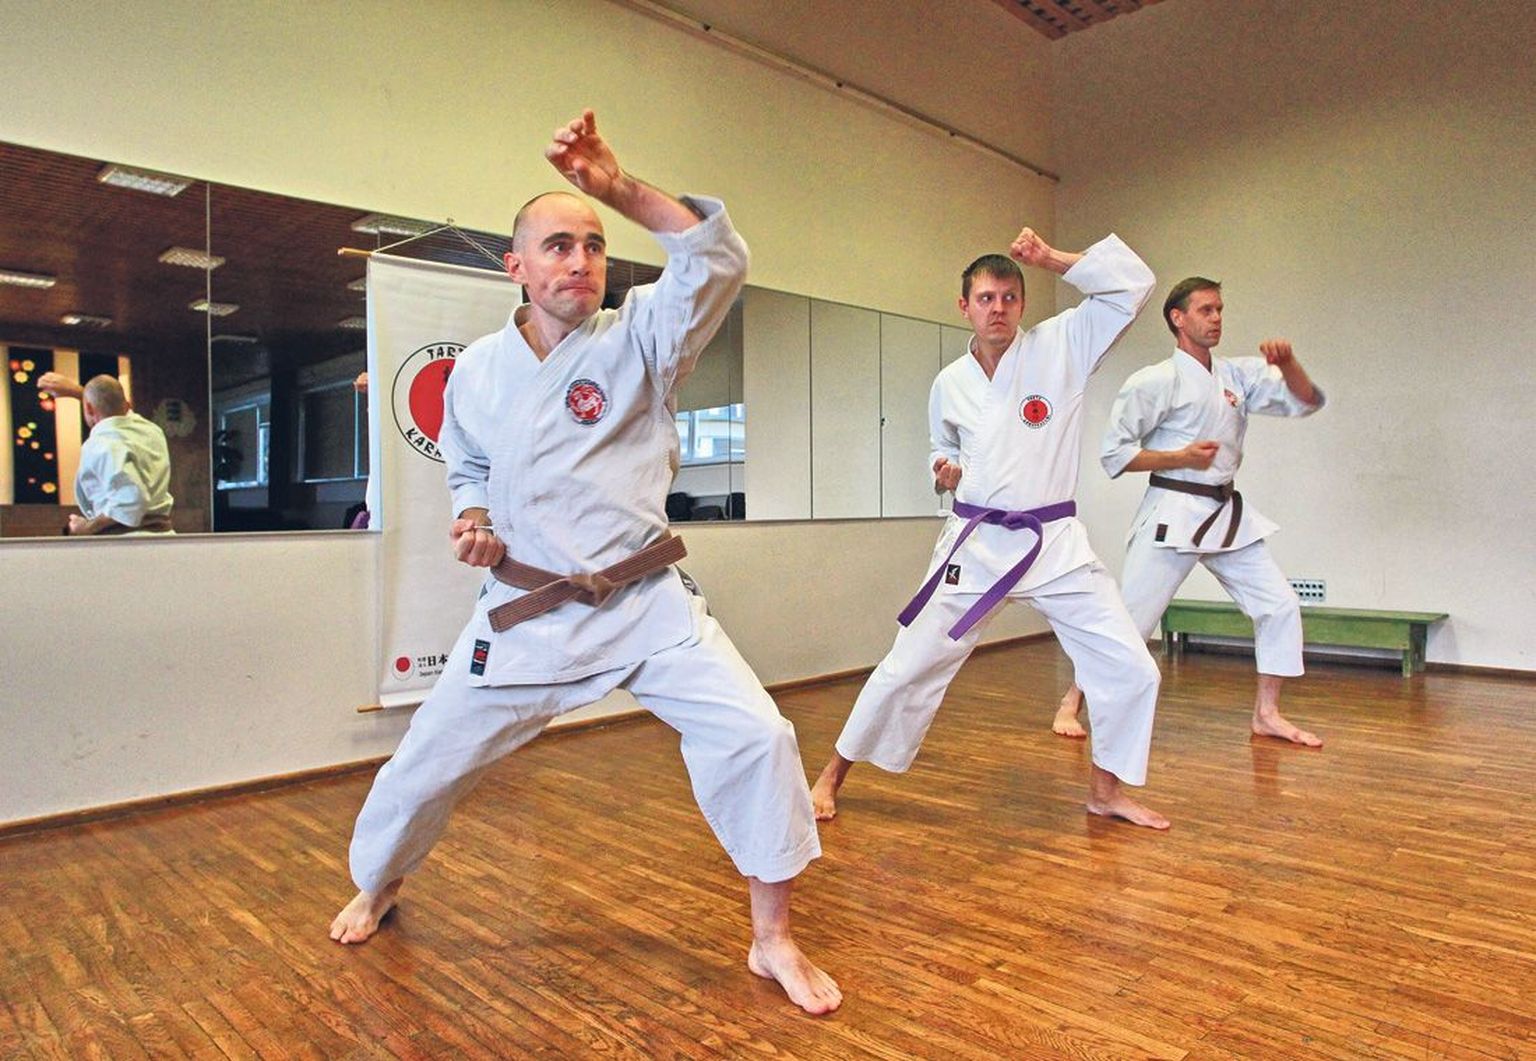 Karate pärast ei pea Jaapanisse sõitma, kinnitasid Vallo Pensa (vasakul), Marek Liinev ja Leho Roots. Tartu karateklubi liikmed käivad koos, et treenida keha ja vaimu, mitte selleks, et võidelda.